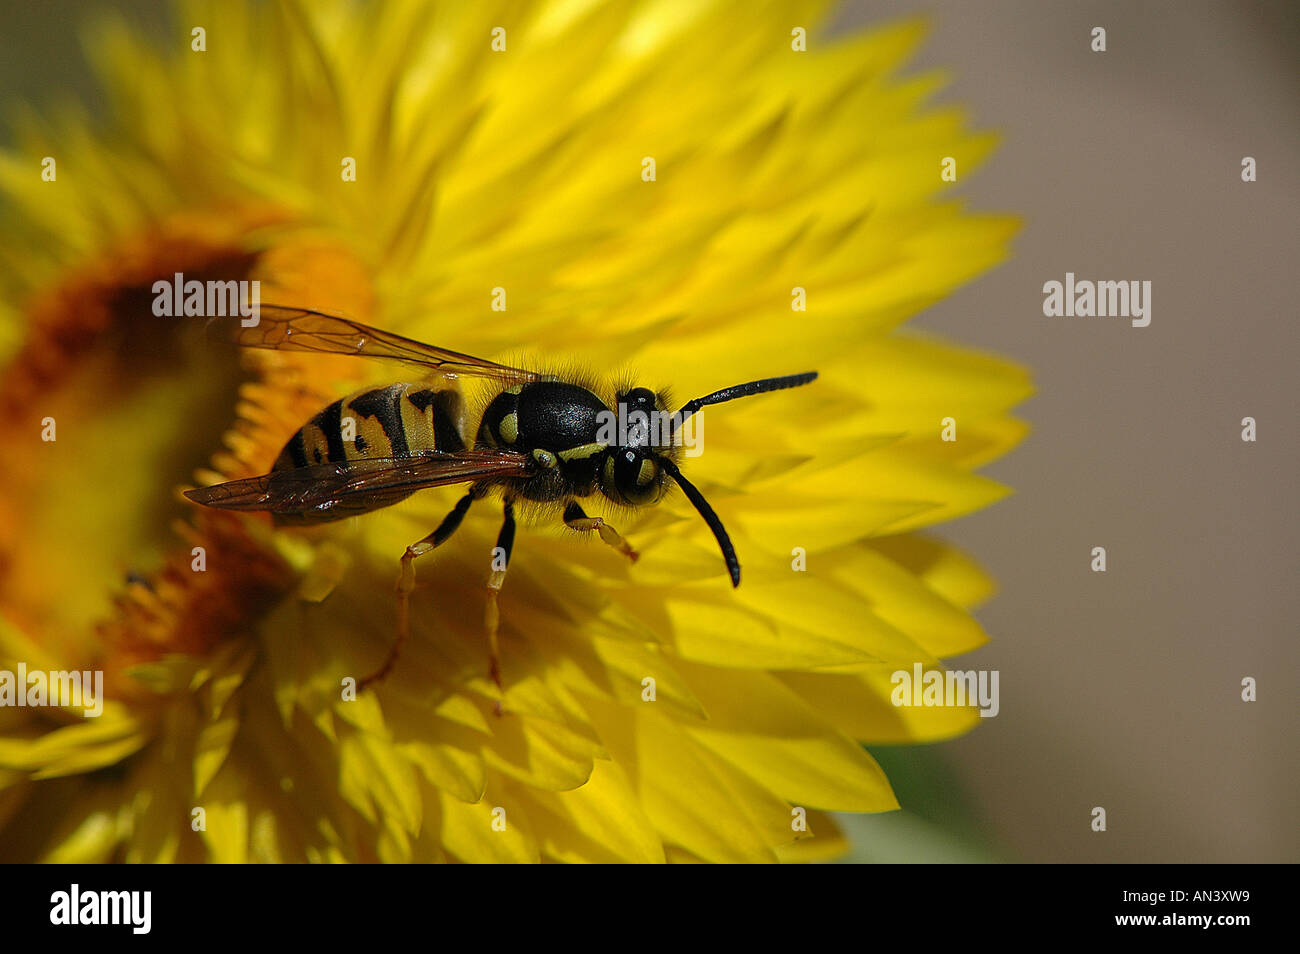 Wasp on yellow strawflower Stock Photo